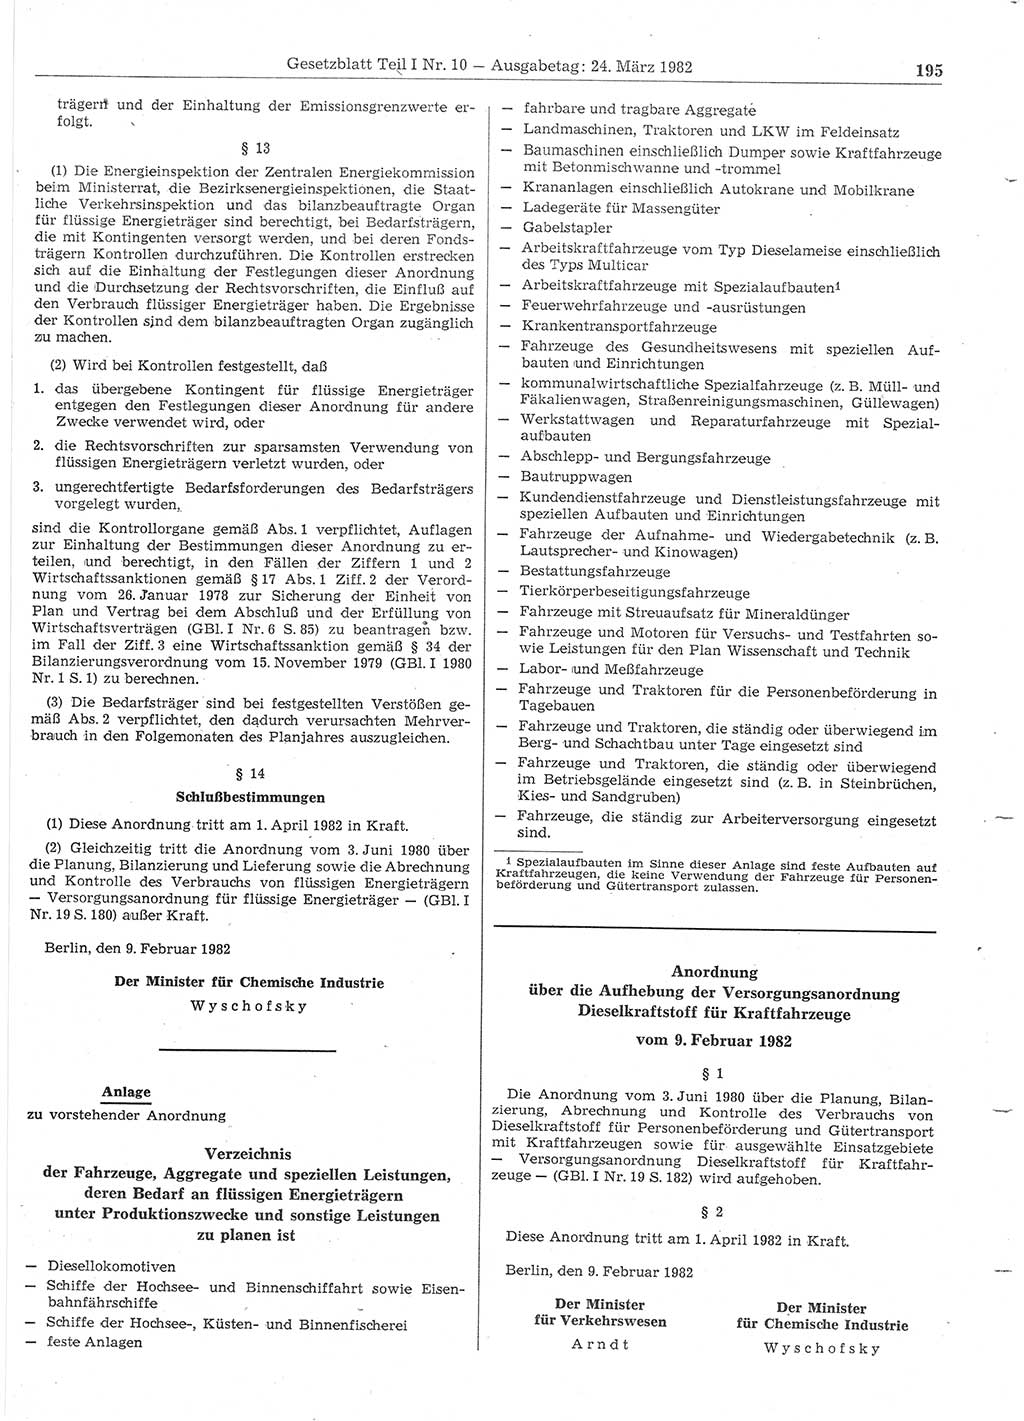 Gesetzblatt (GBl.) der Deutschen Demokratischen Republik (DDR) Teil Ⅰ 1982, Seite 195 (GBl. DDR Ⅰ 1982, S. 195)